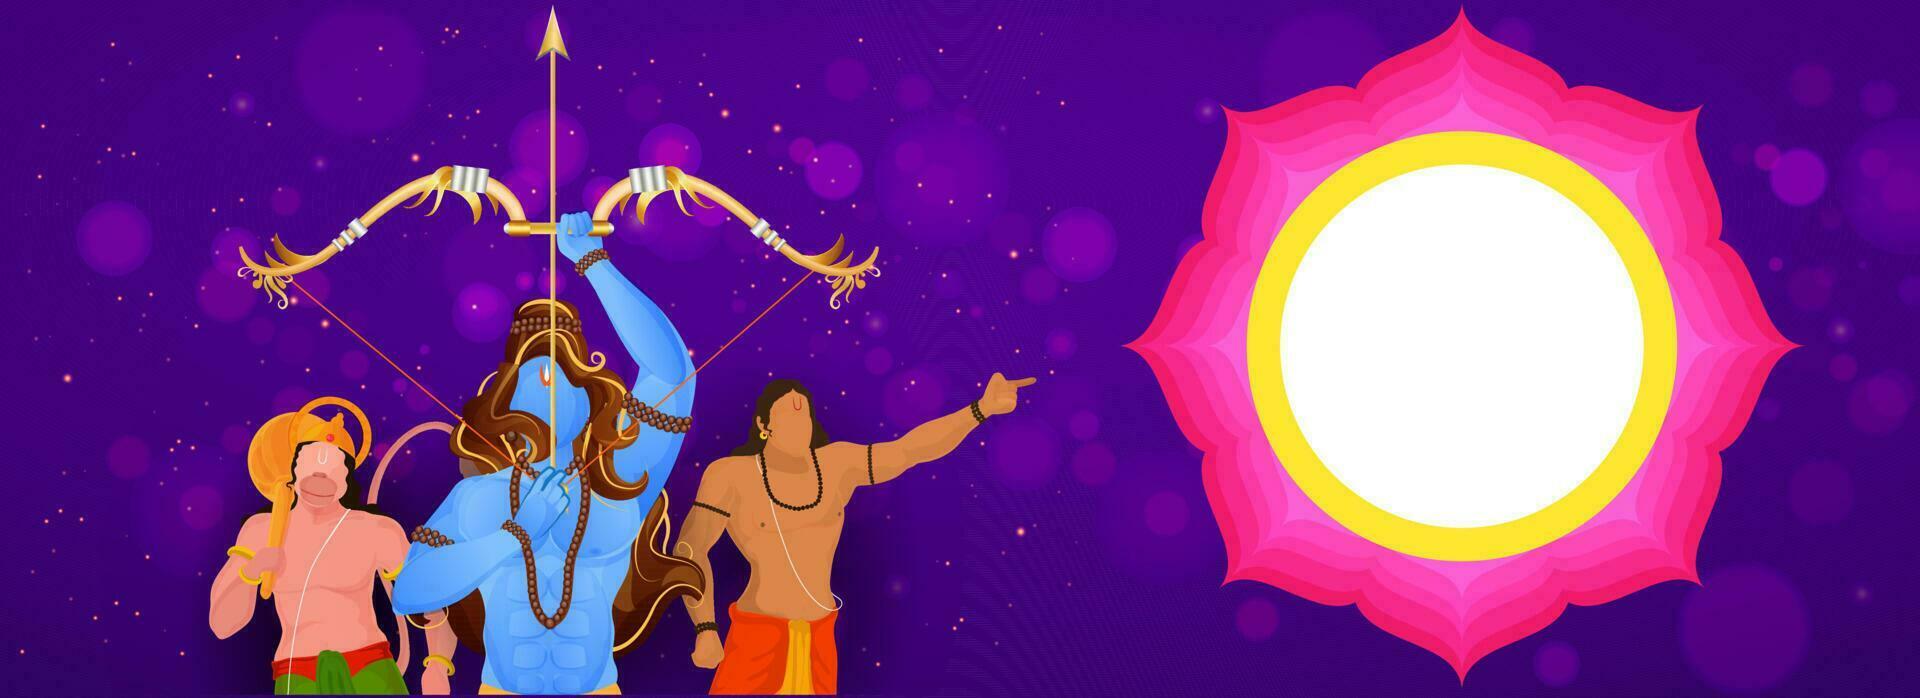 hindú mitología señor rama tomando un objetivo con hanuman, lakshman personaje y vacío mandala marco en púrpura bokeh antecedentes. vector